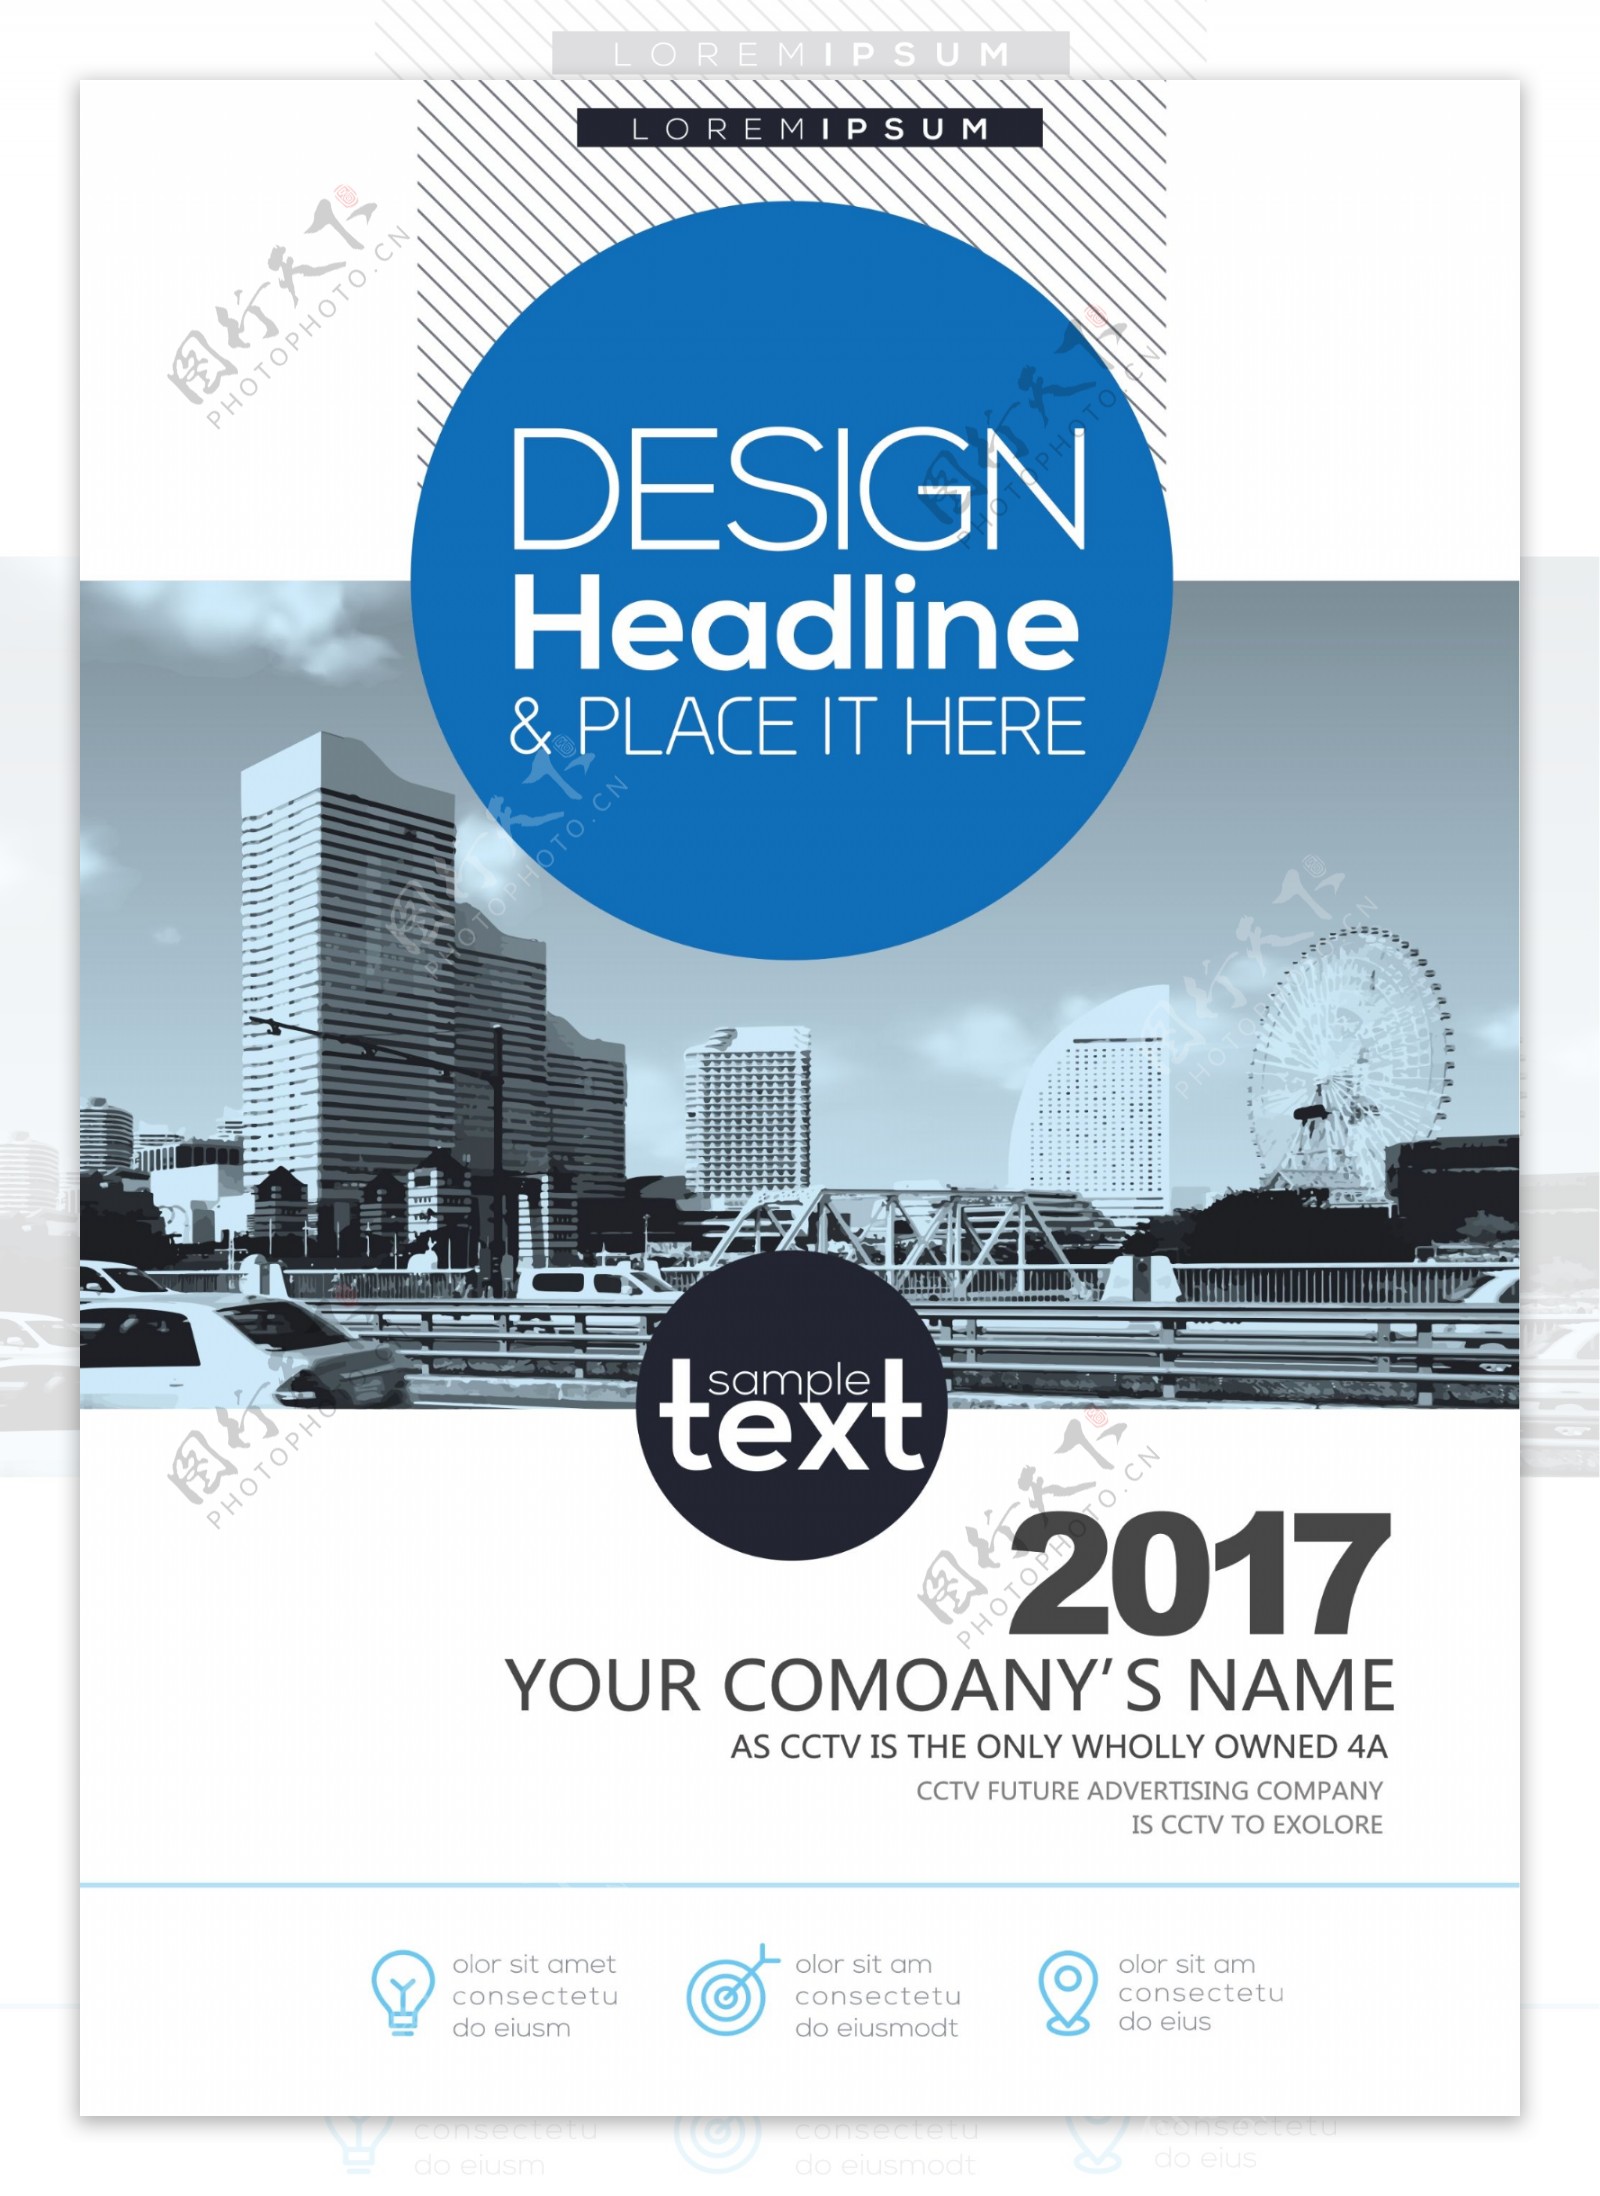 2017时尚高端企业商务画册封面设计